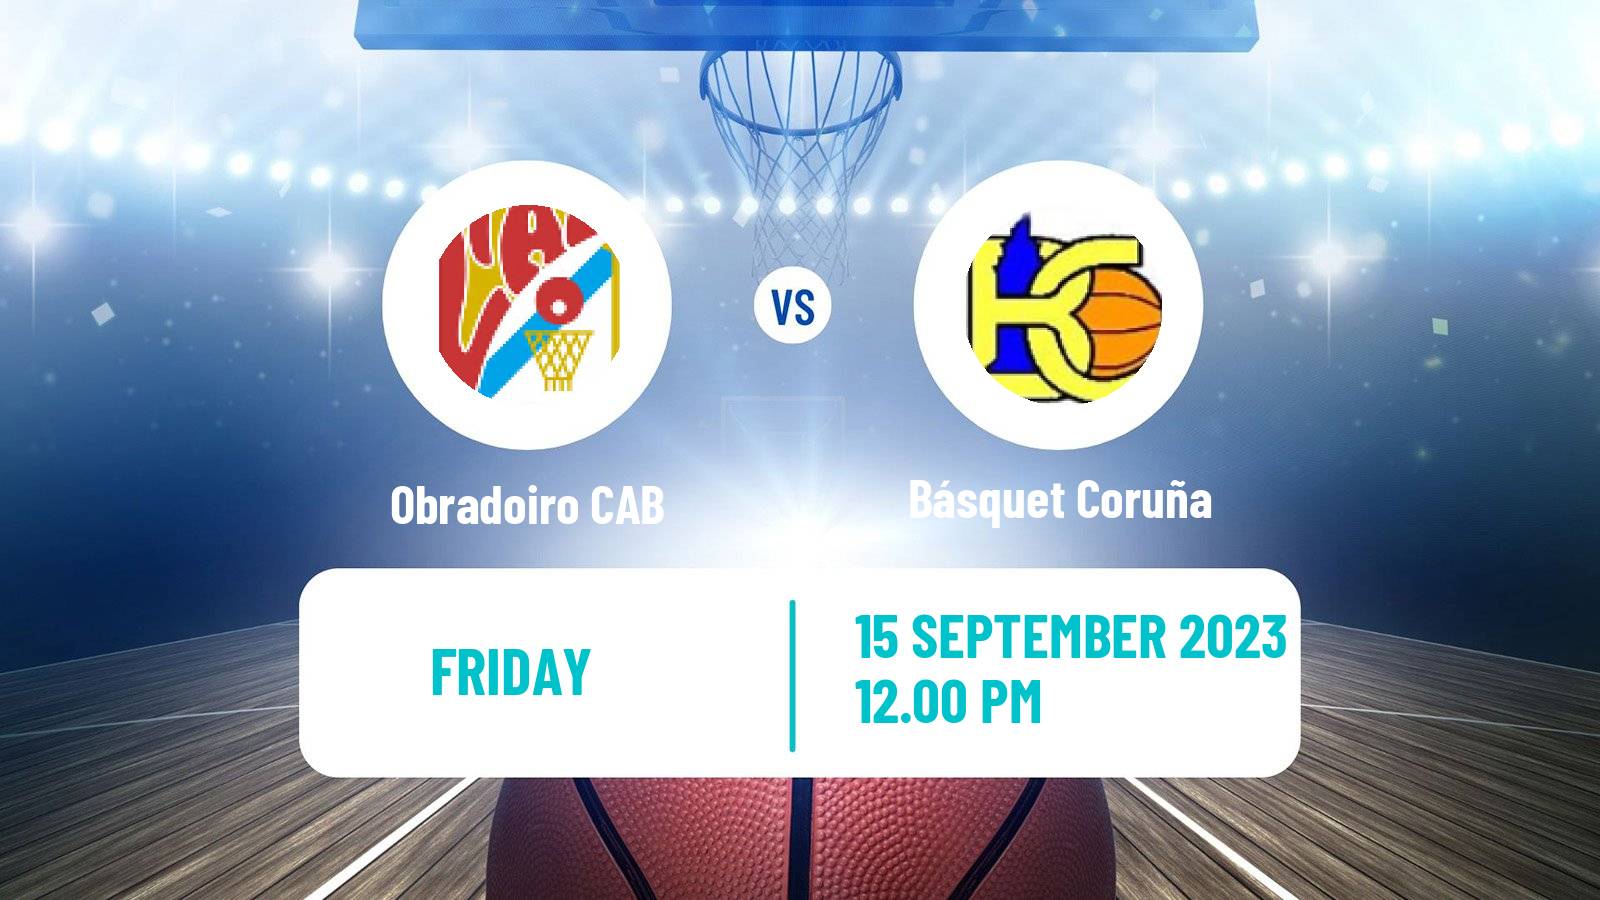 Basketball Club Friendly Basketball Obradoiro CAB - Básquet Coruña